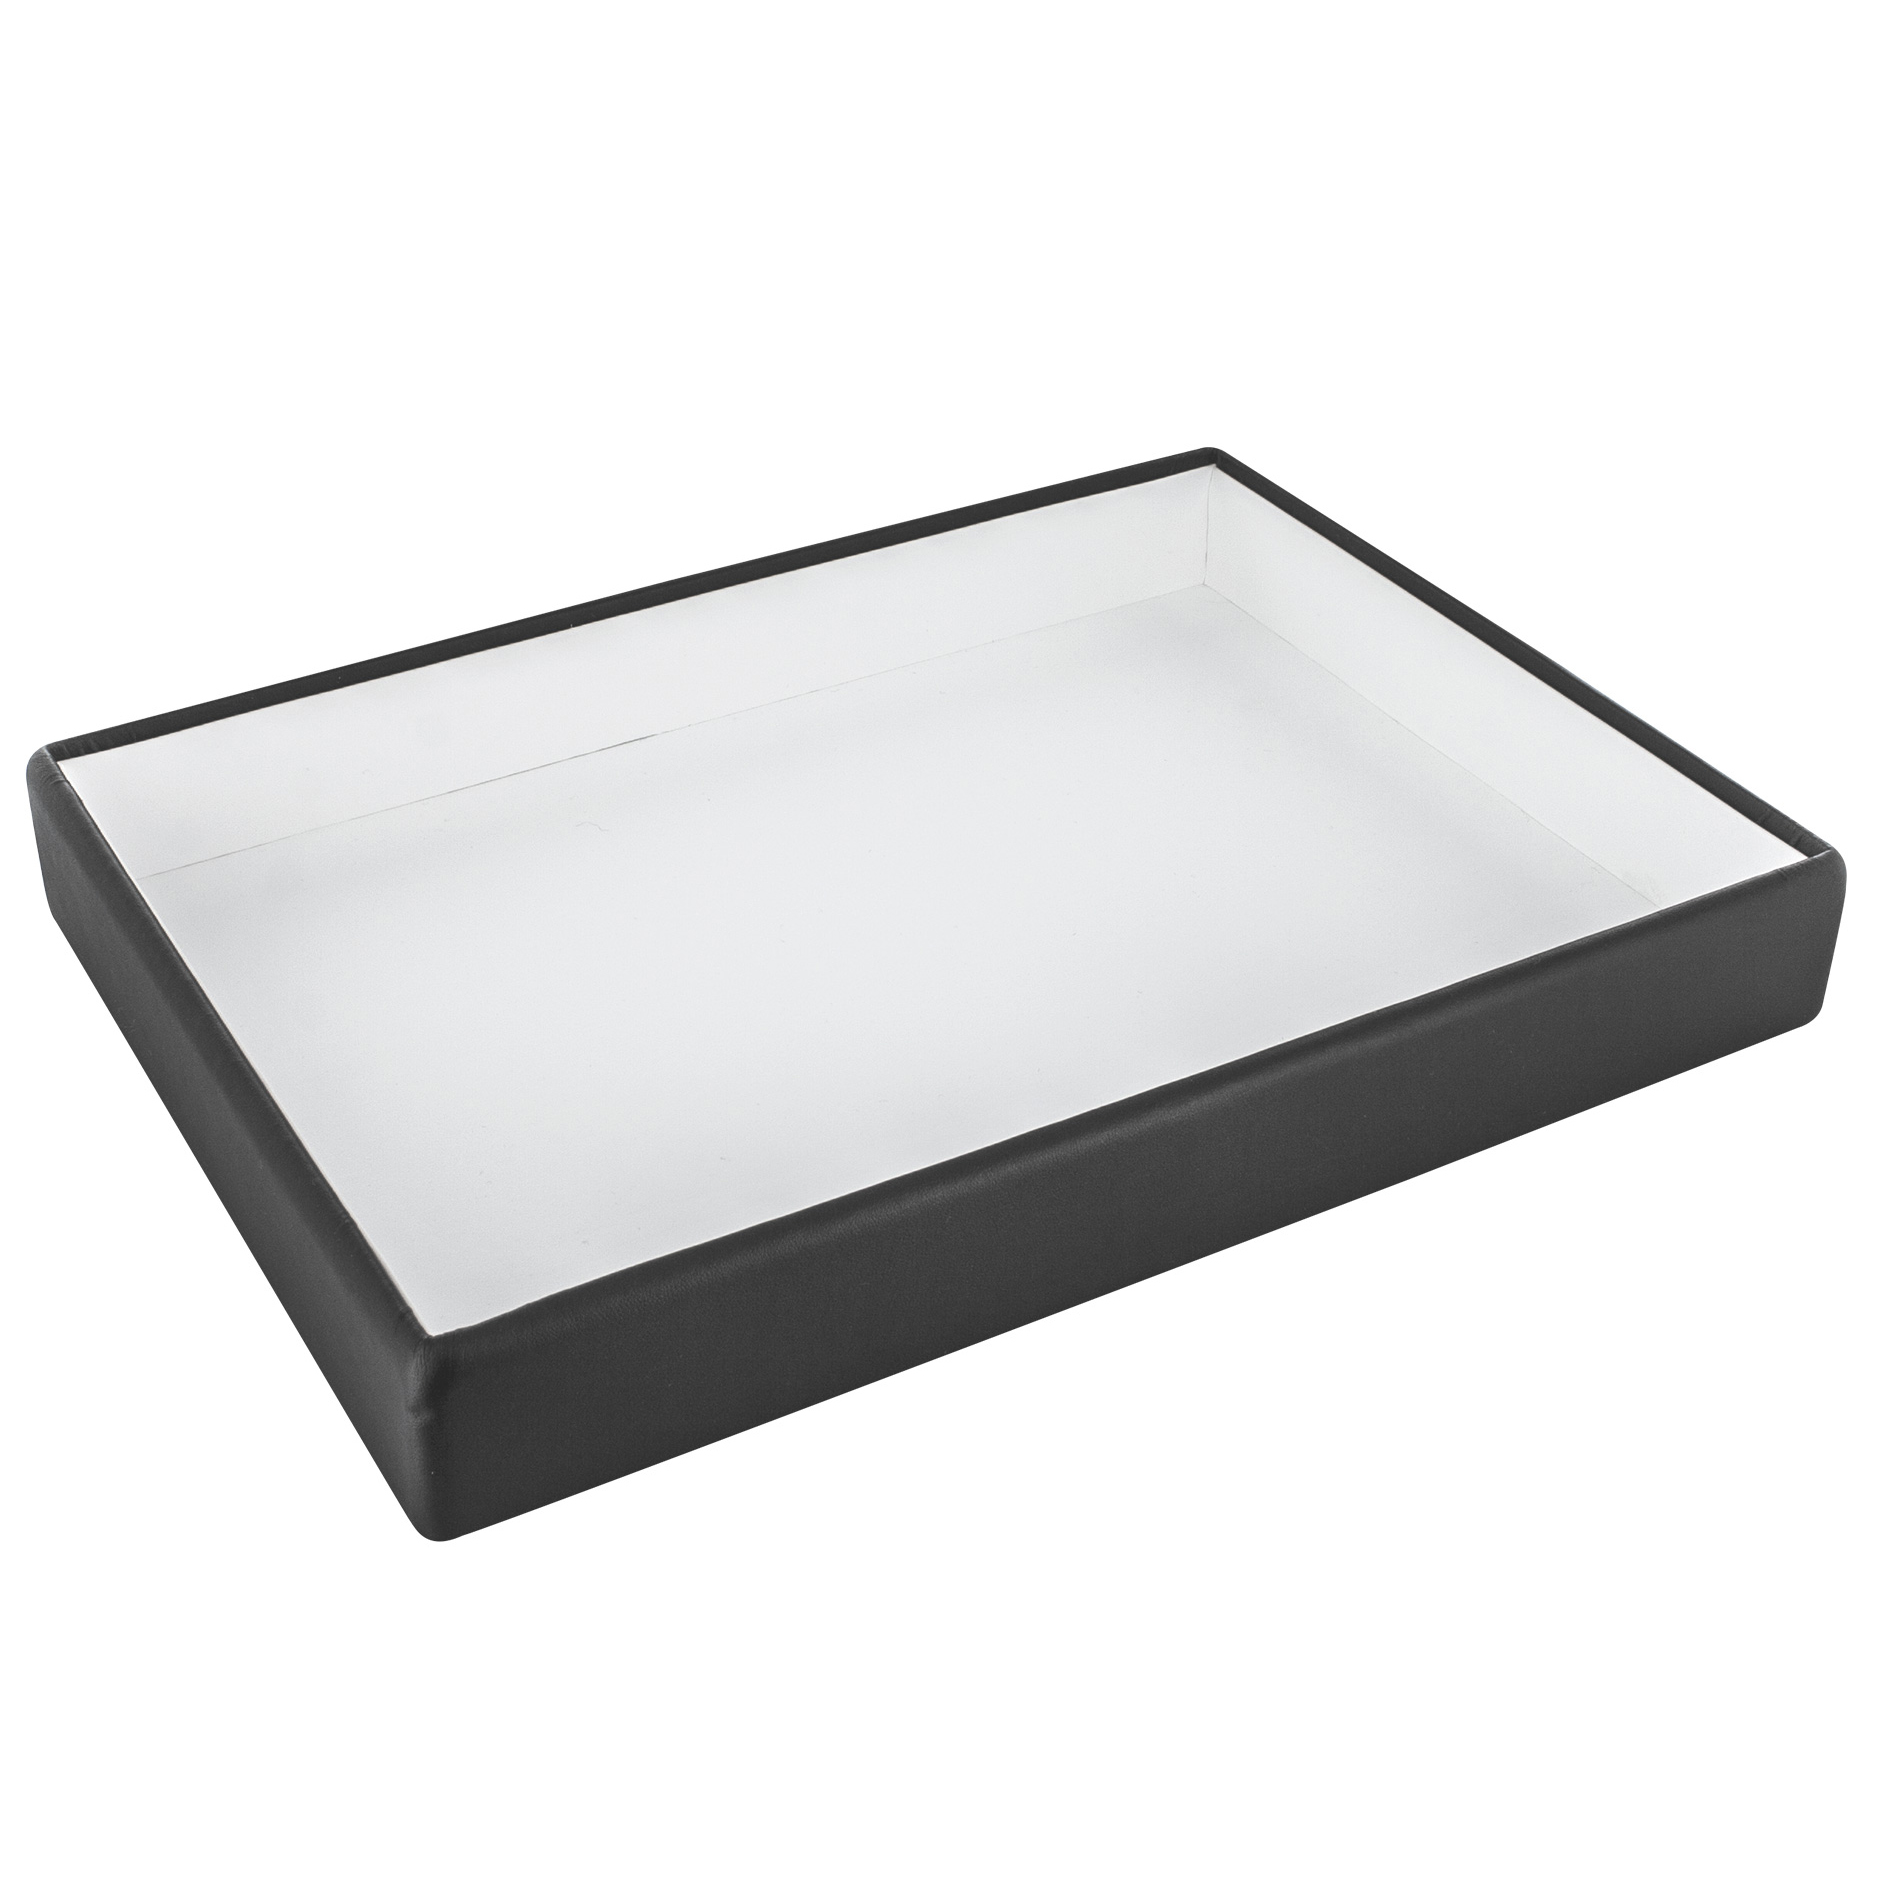 Plateau de présentation vide-poche gainé aspect lisse noir mat/blanc H 4 cm